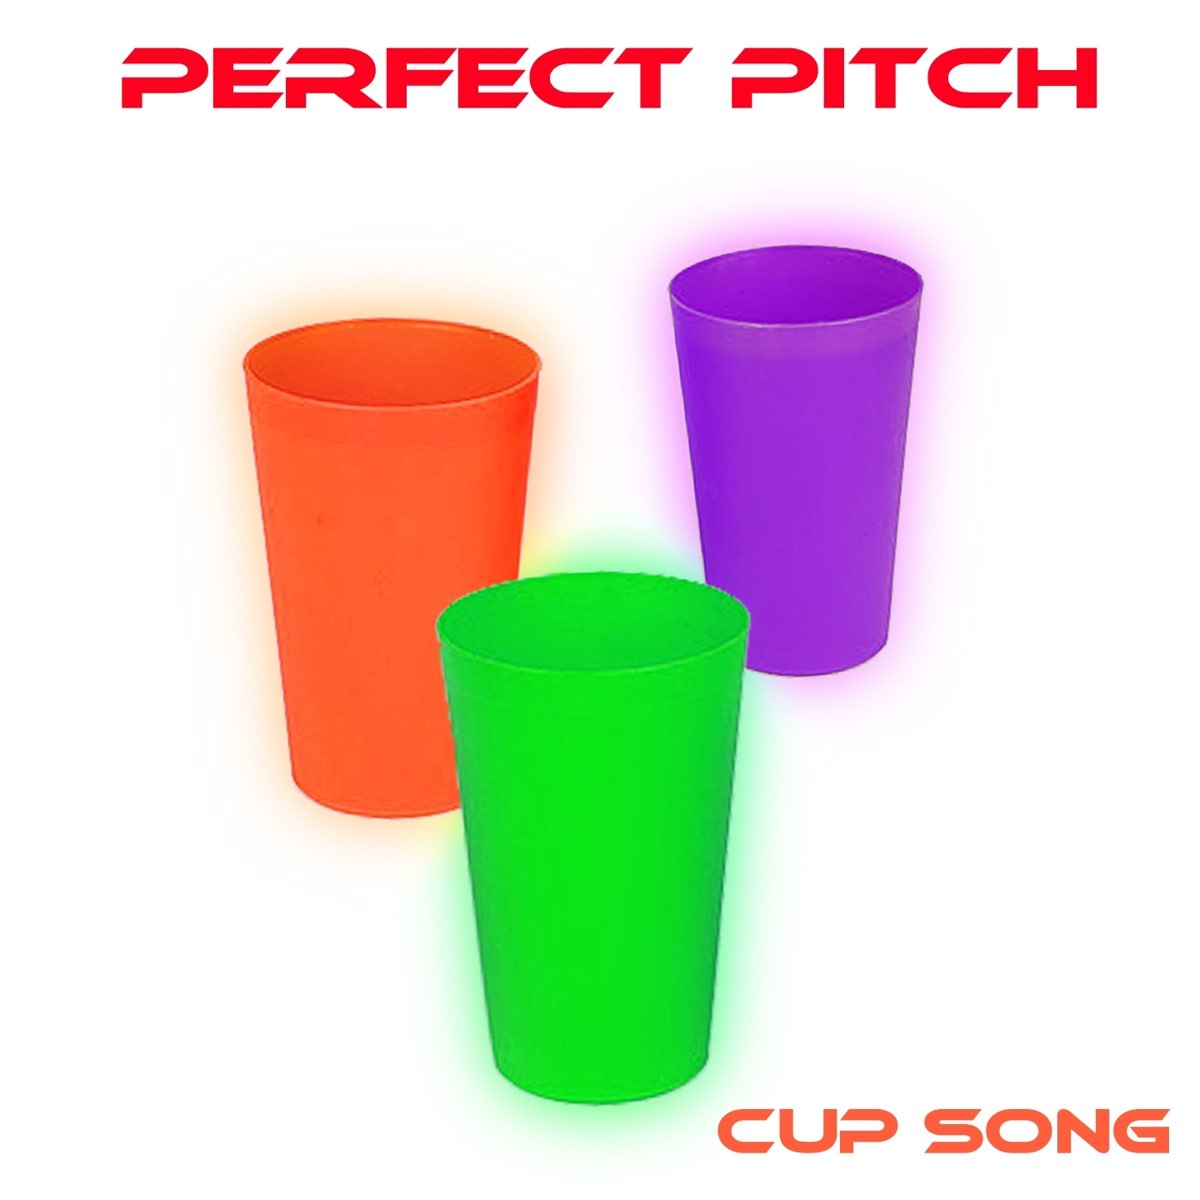 Cup Song – Album par Perfect Pitch – Apple Music